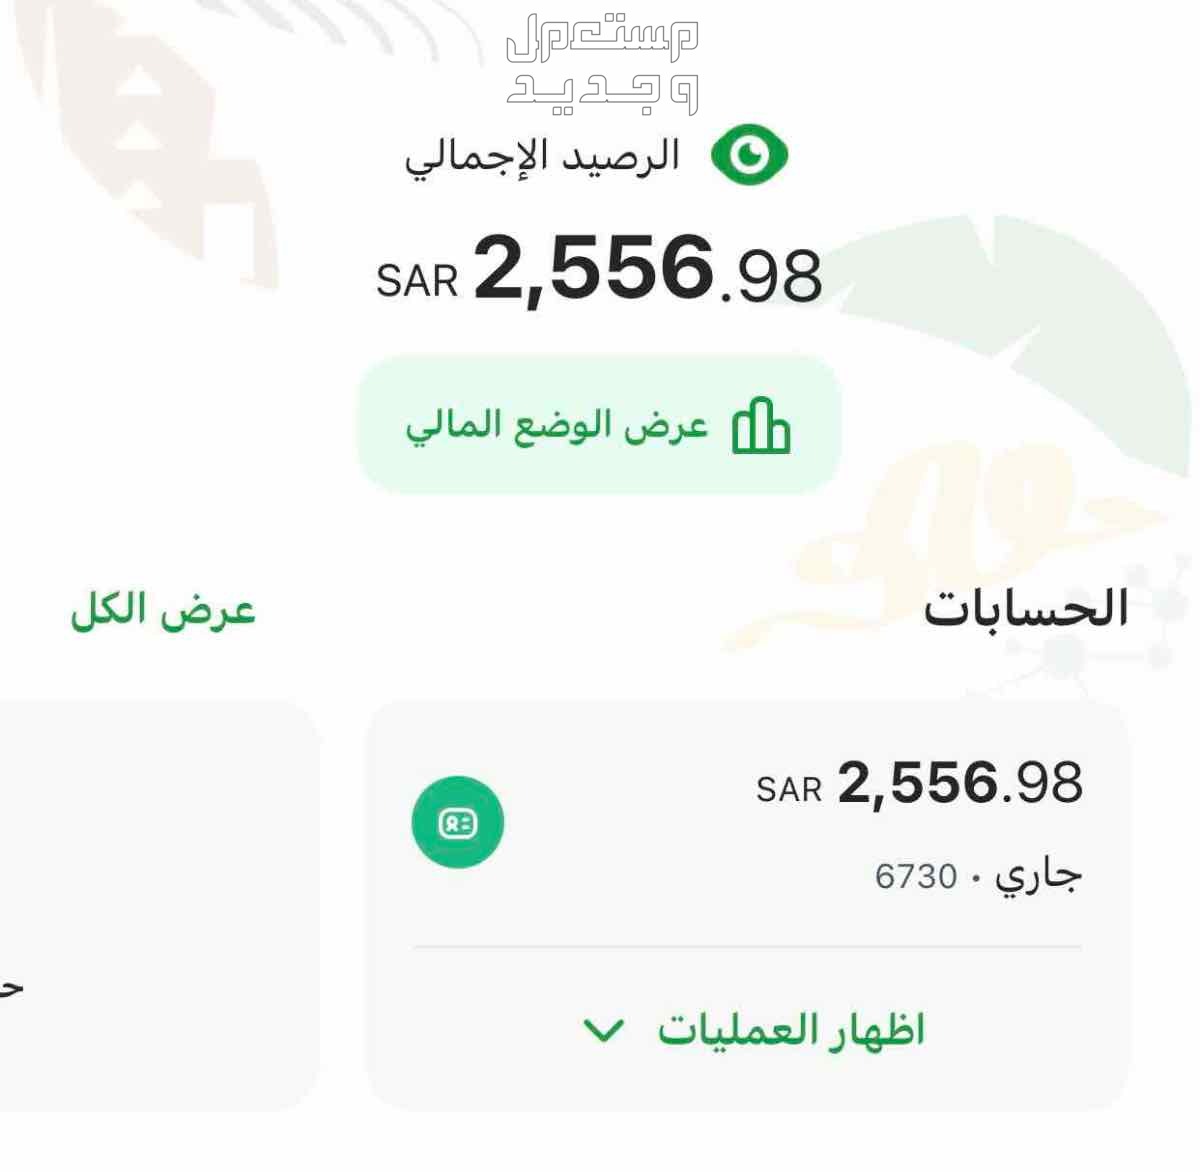 منتج رقمي  في الخرج بسعر 50 ريال سعودي ارباحح اسبوعين الحمدلله 👌🏻💸